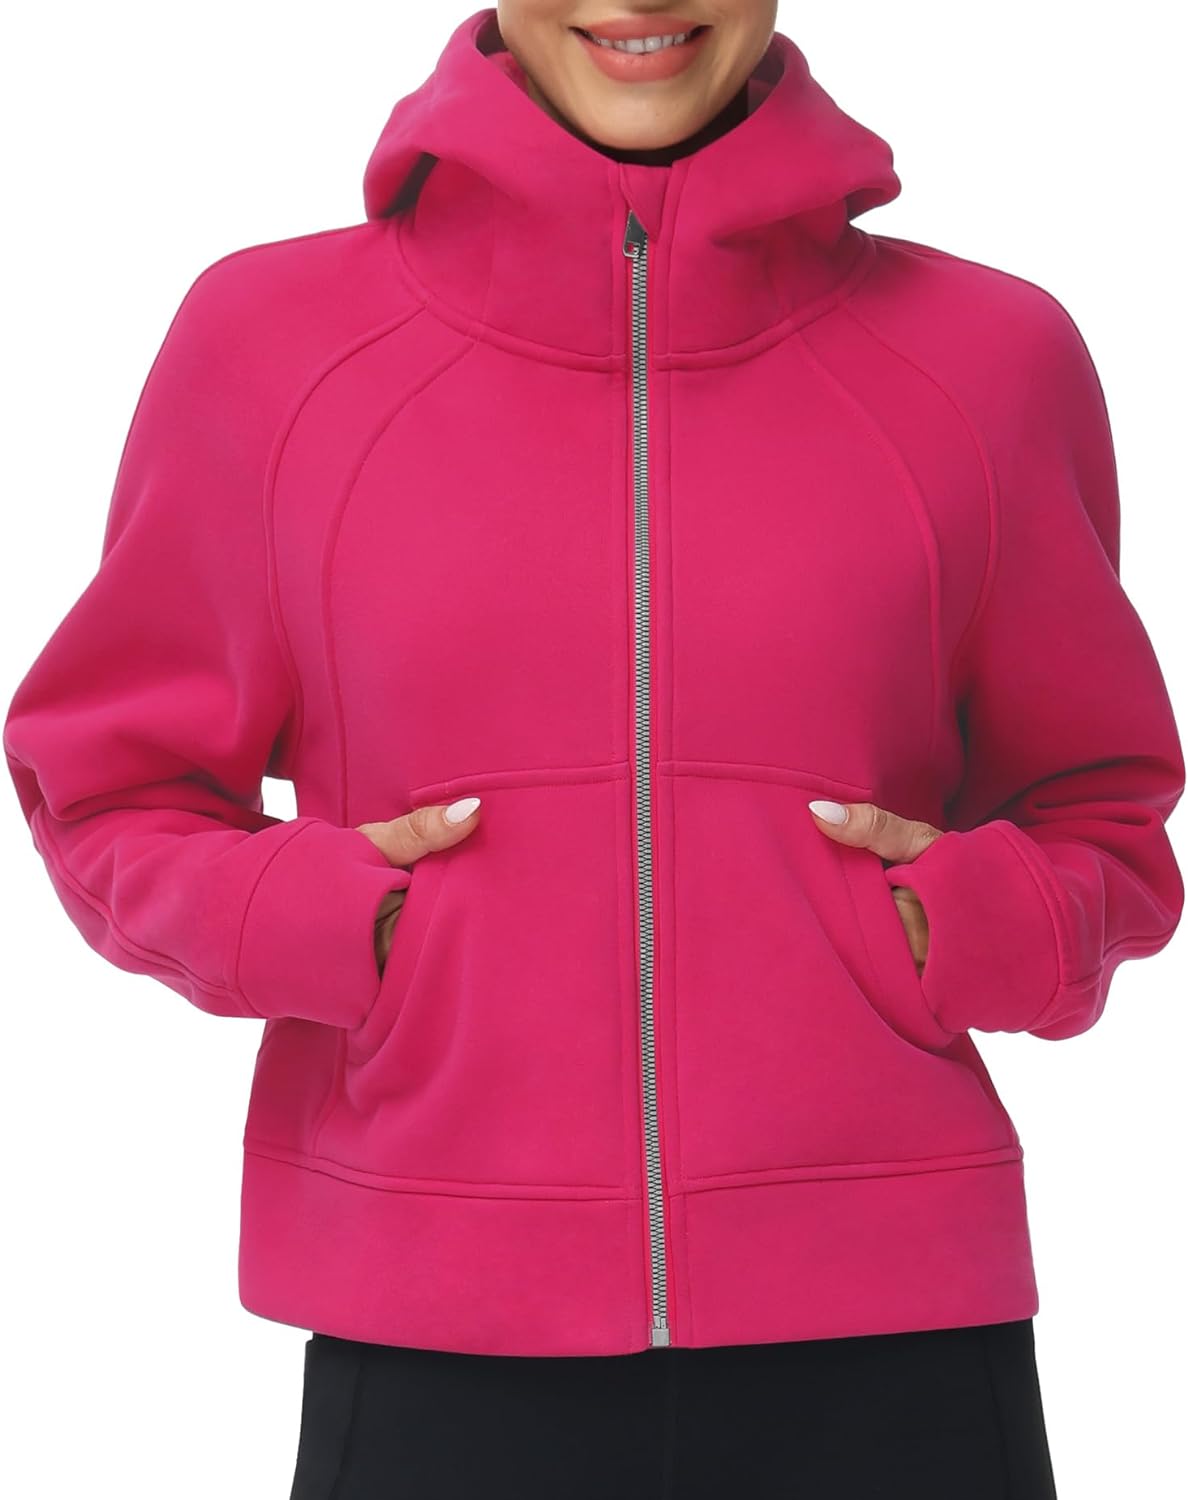 THE GYM PEOPLE Women's Full-Zip Up Hoodies Jacket Fleece Workout Crop Tops  Sweat